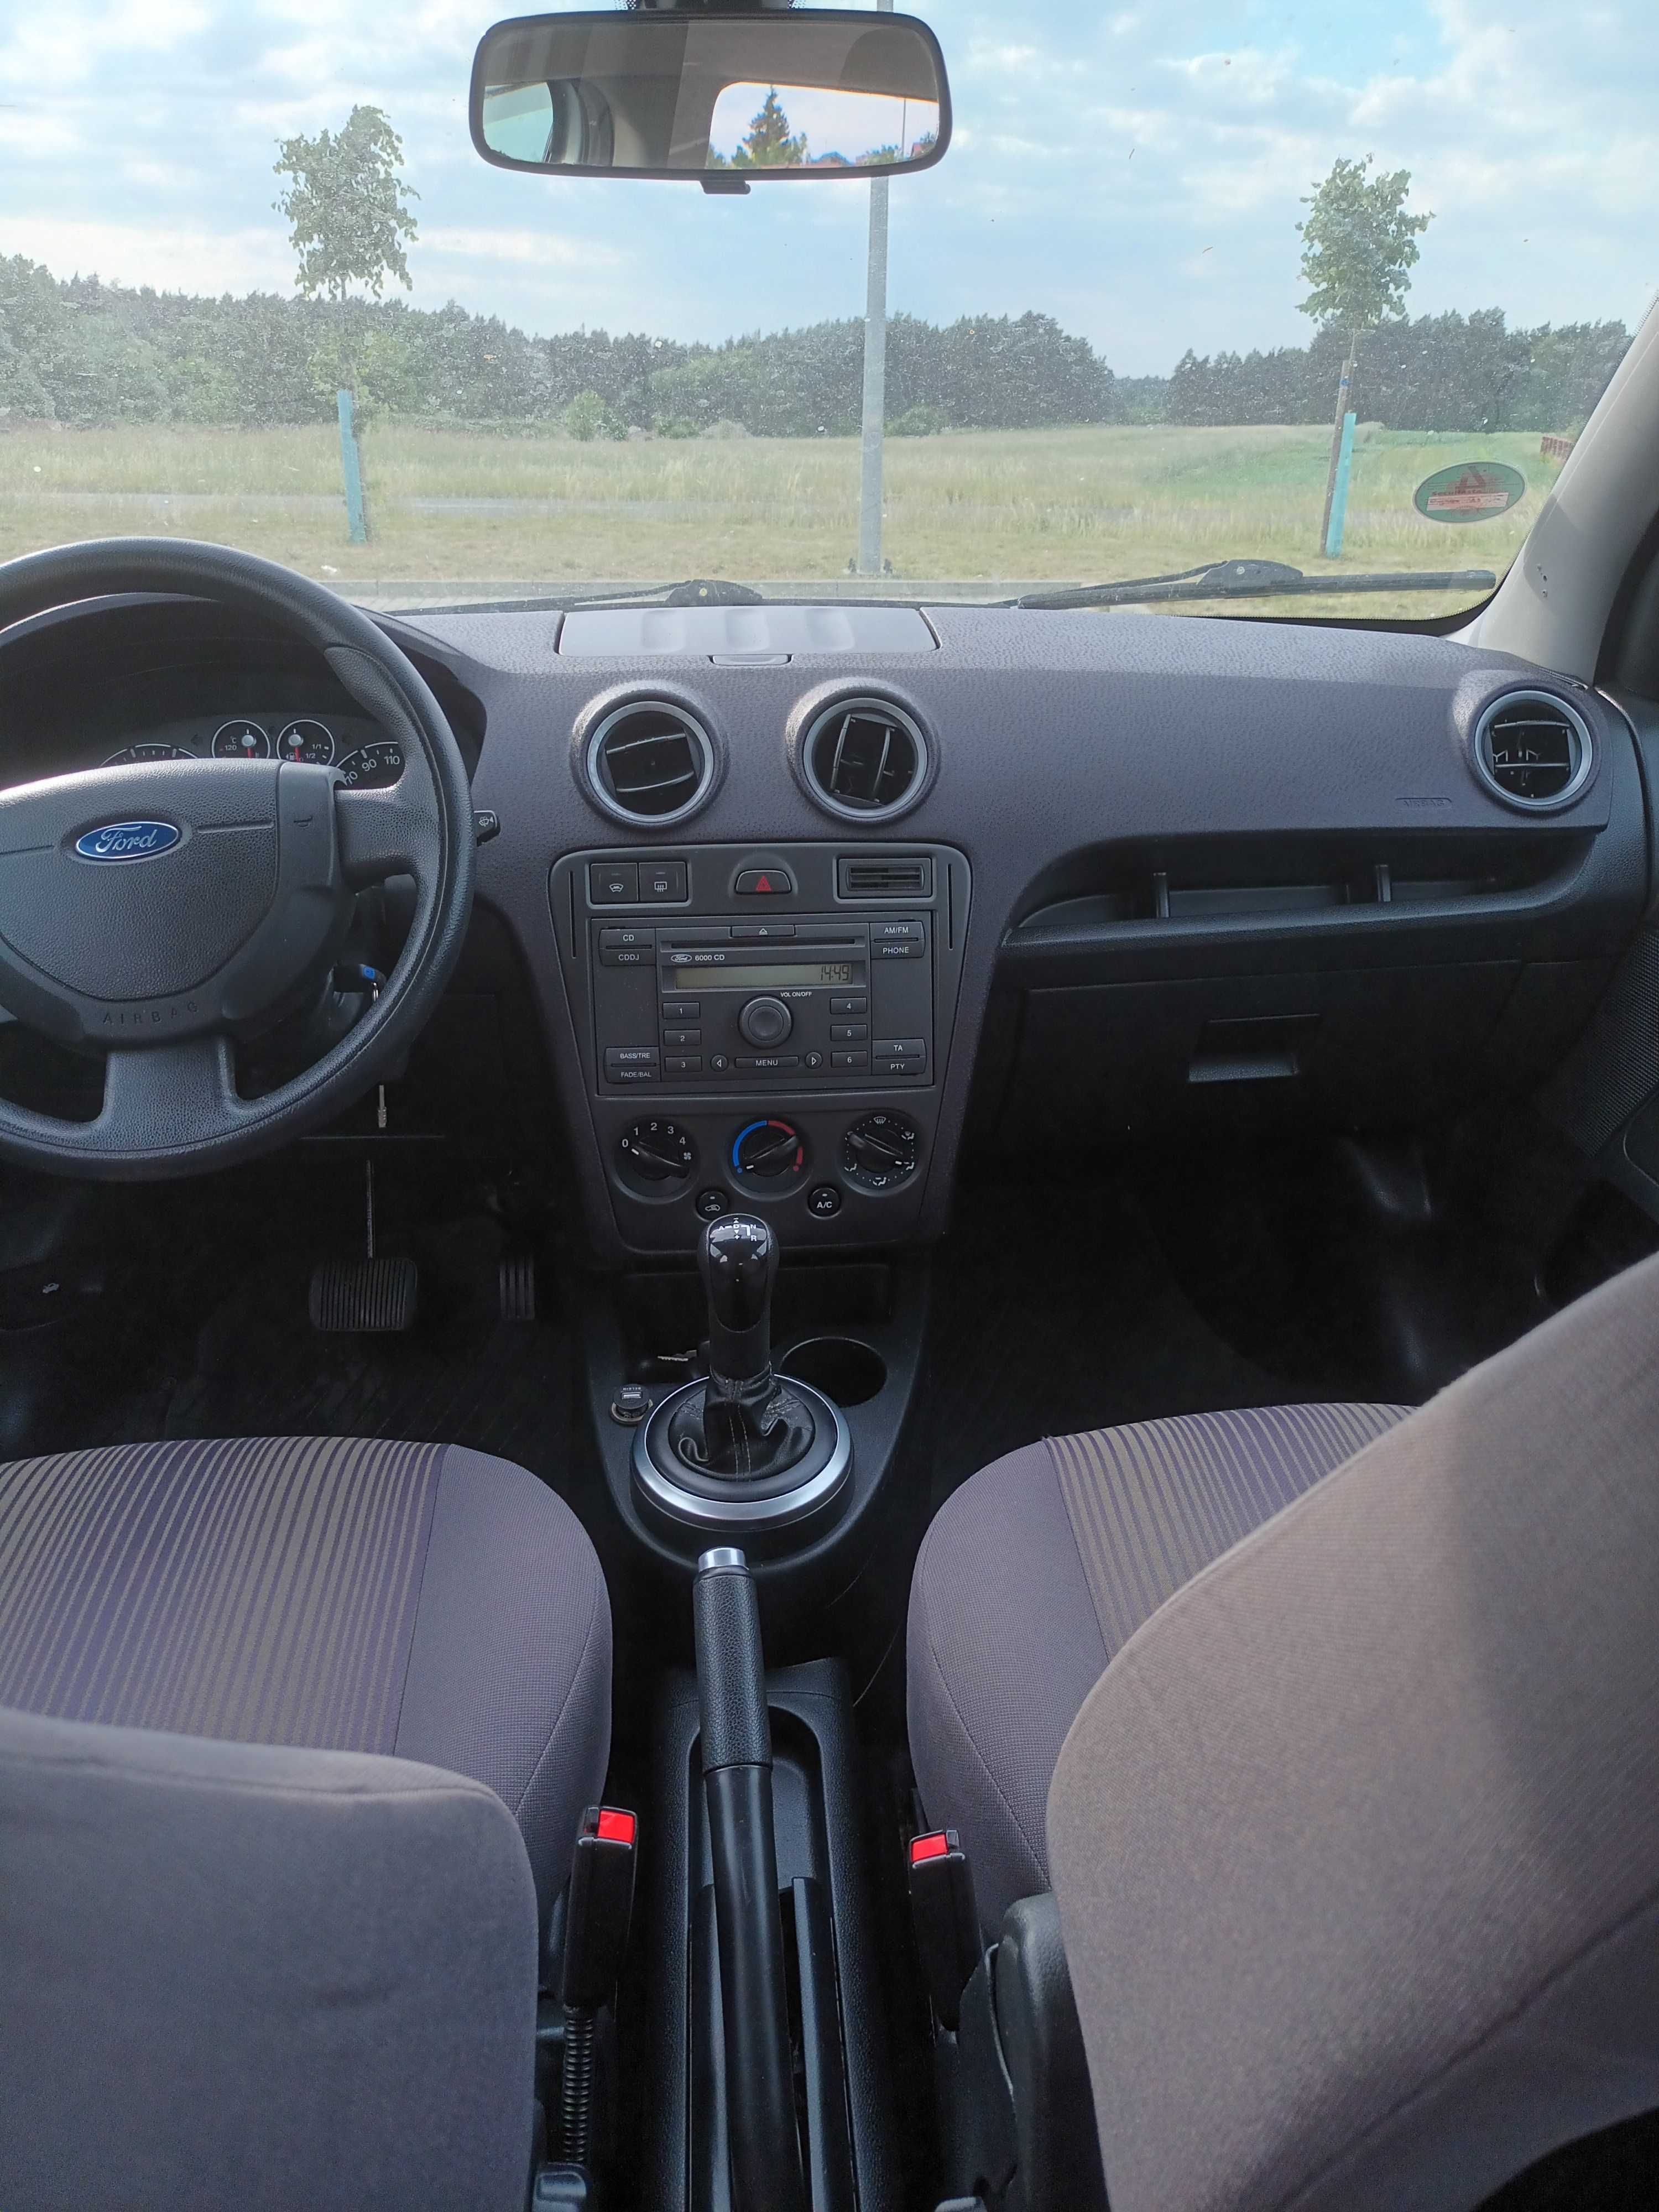 Ford Fusion 1,4 Benzyna, Automat, 2009 Rok Klimatyzacja, Alu-felgi